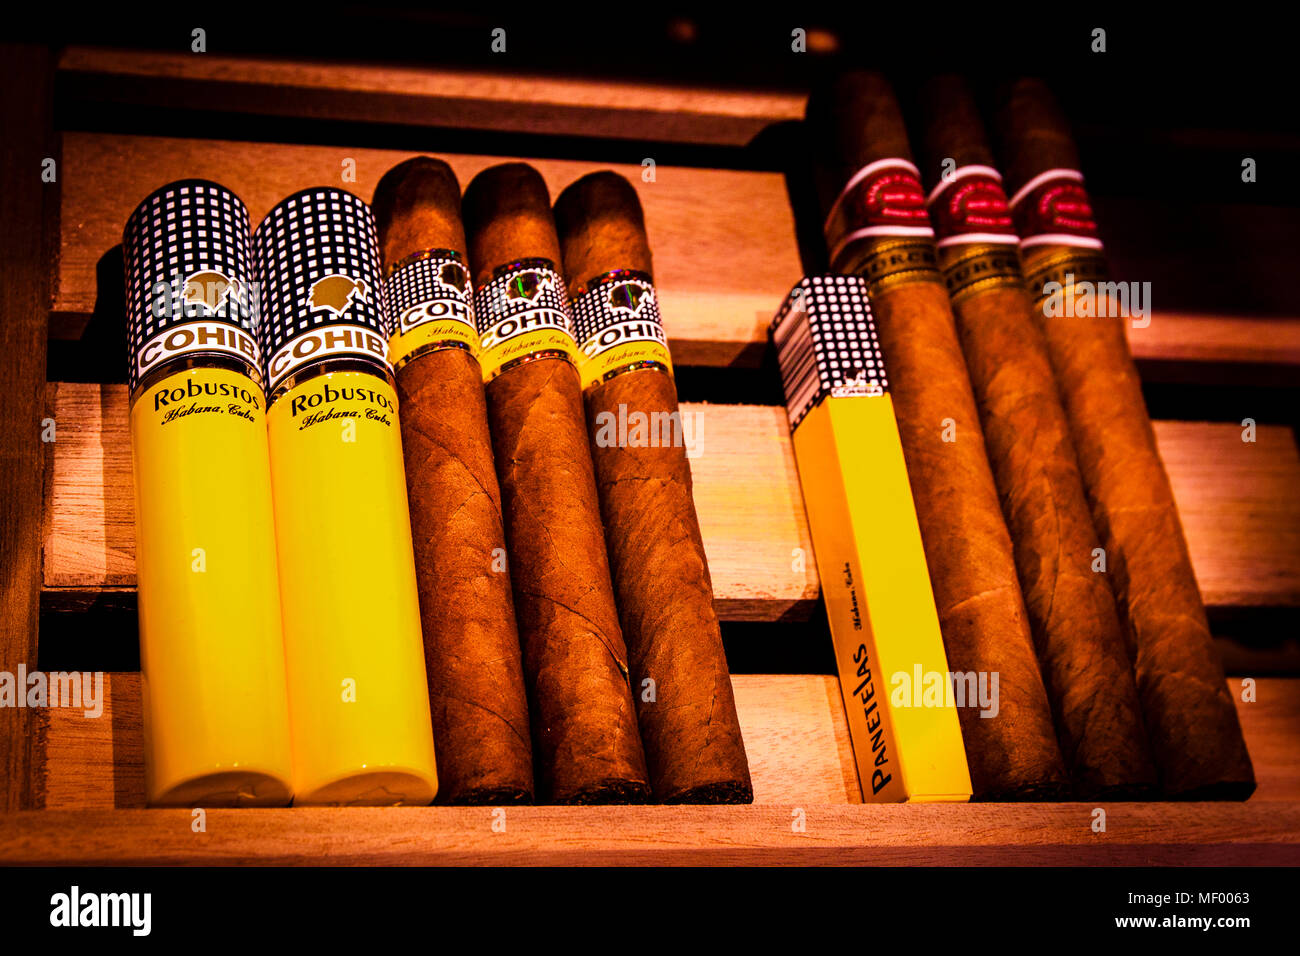 Zigarren im Hotel Blow Up 5050, Posen. Das Herz der Davidoff Lounge: Ein Schrank mit einer feinen Auswahl an Zigarren Stockfoto